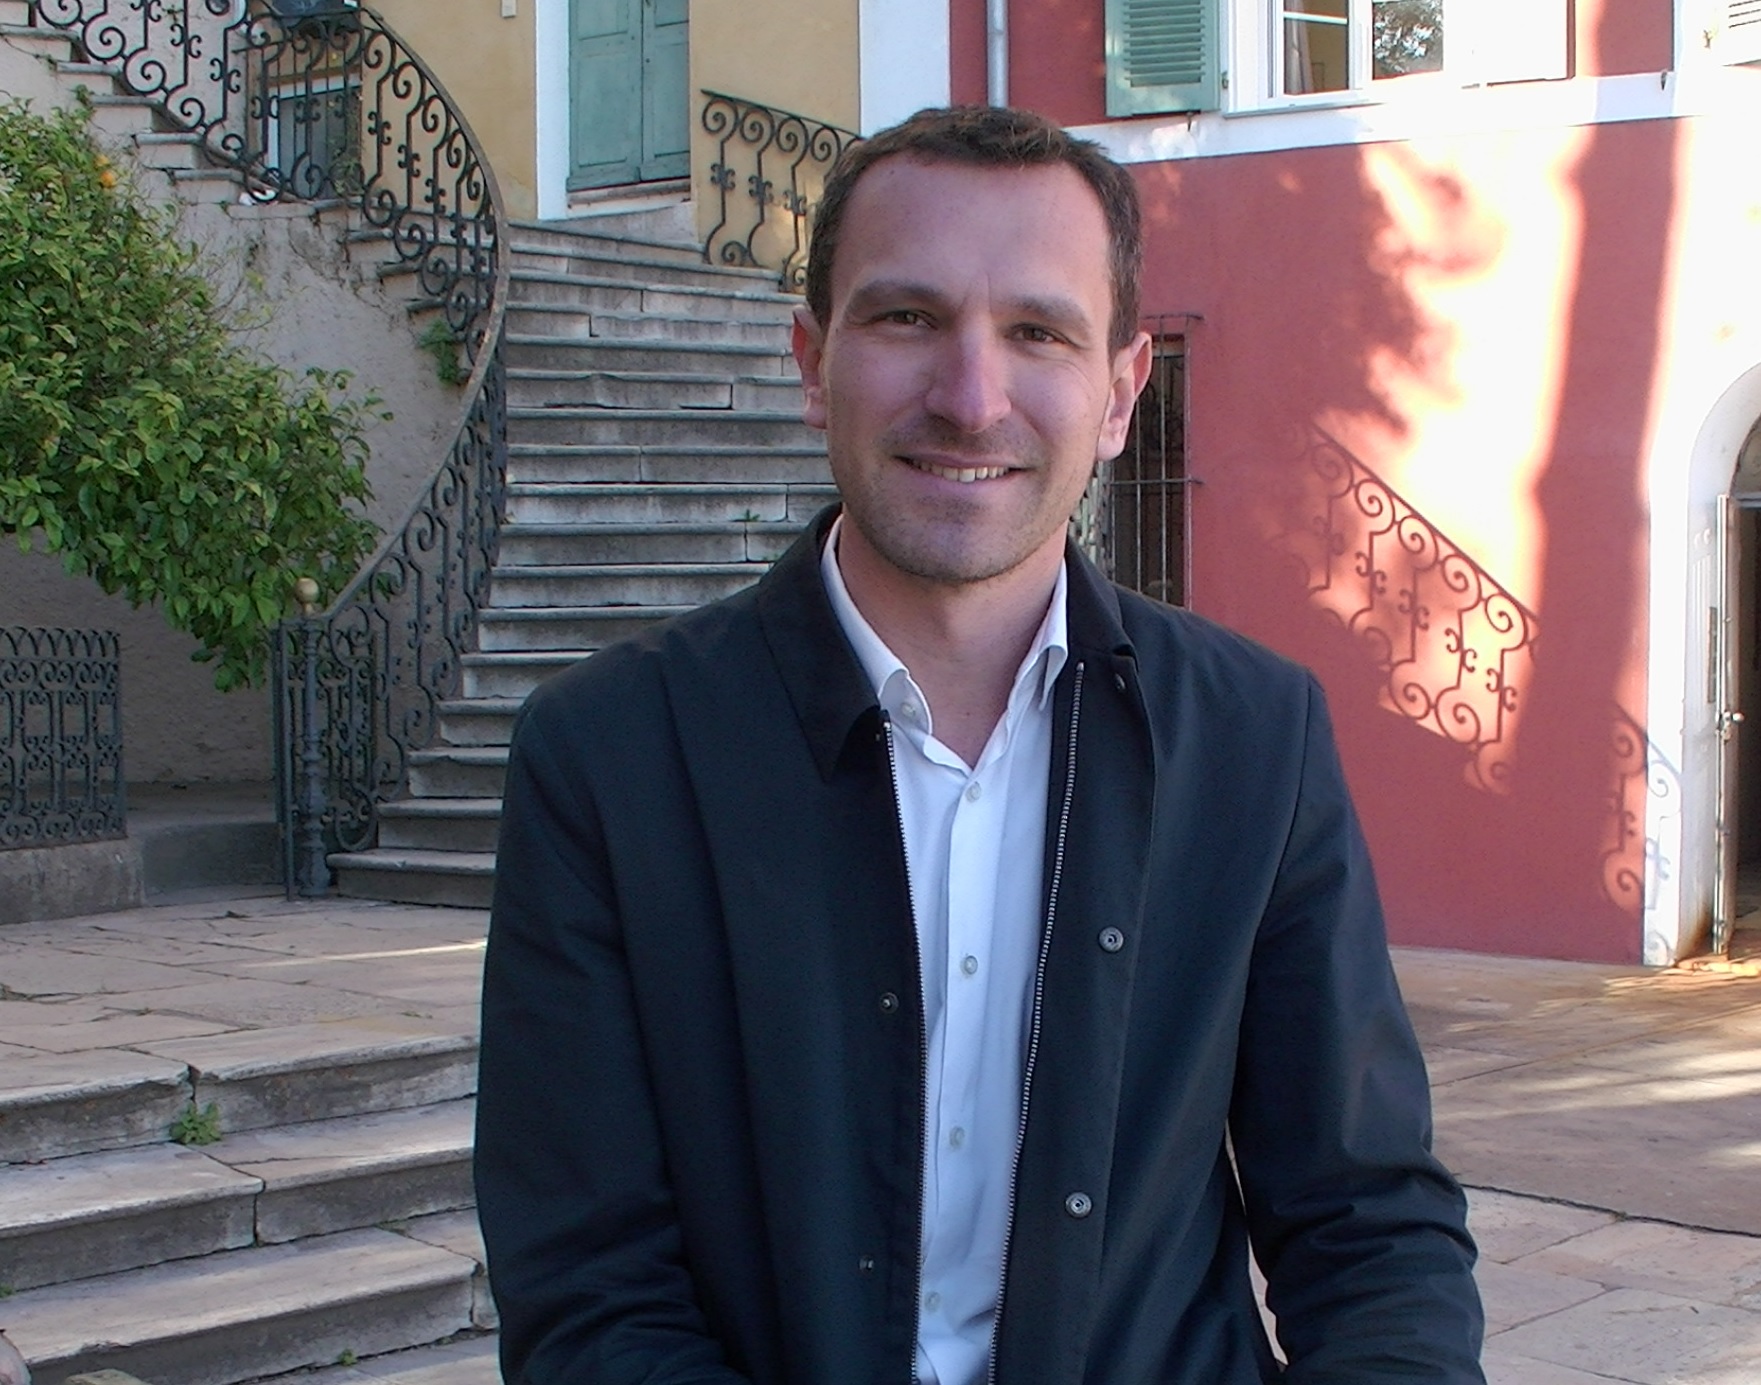 Julien Morganti : «avec la crise sanitaire, la situation en Corse se dégrade fortement »